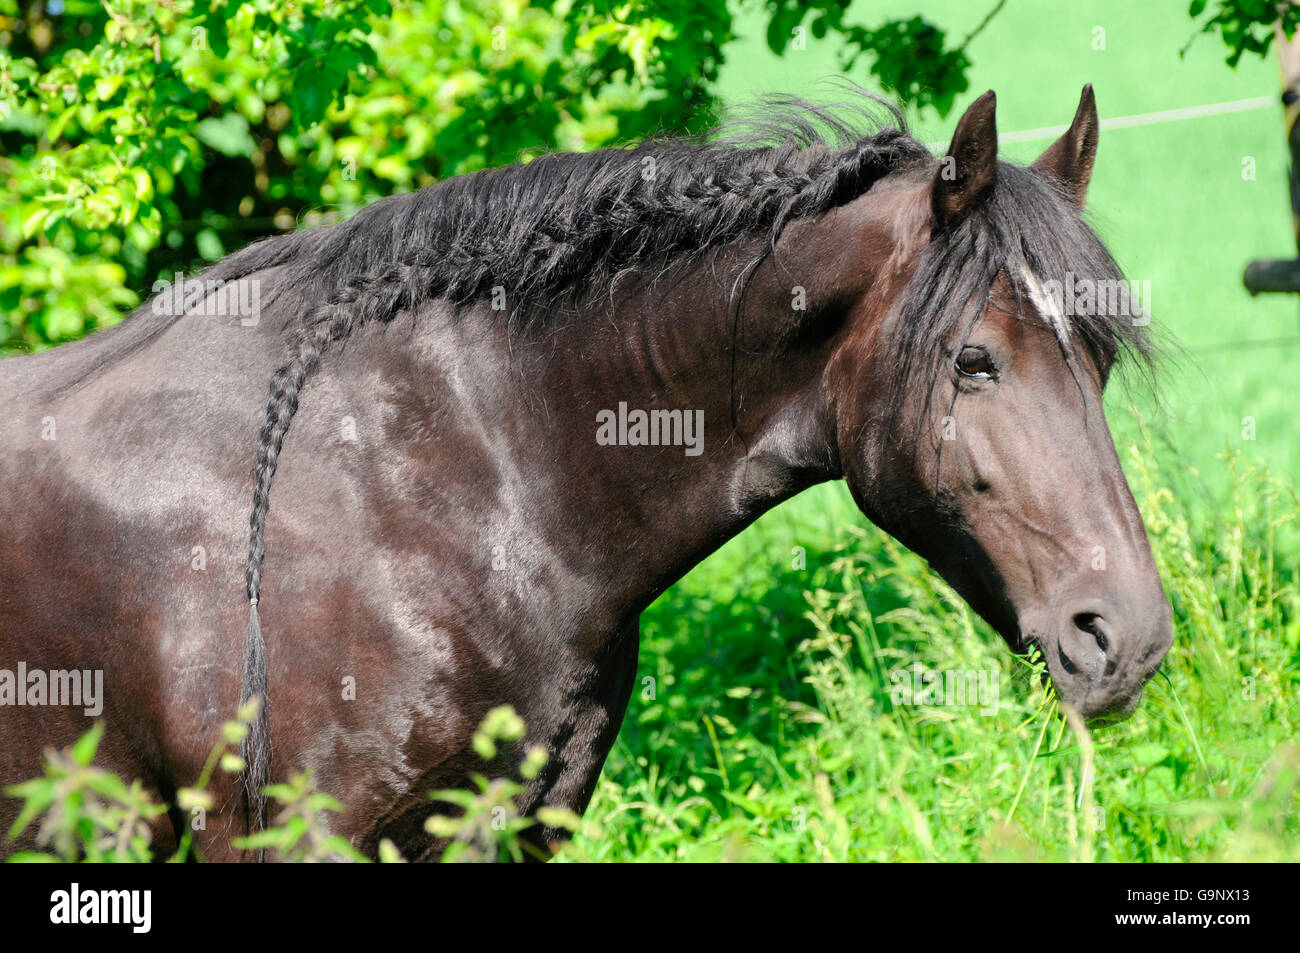 Frisian Horse, mare / braided mane Stock Photo